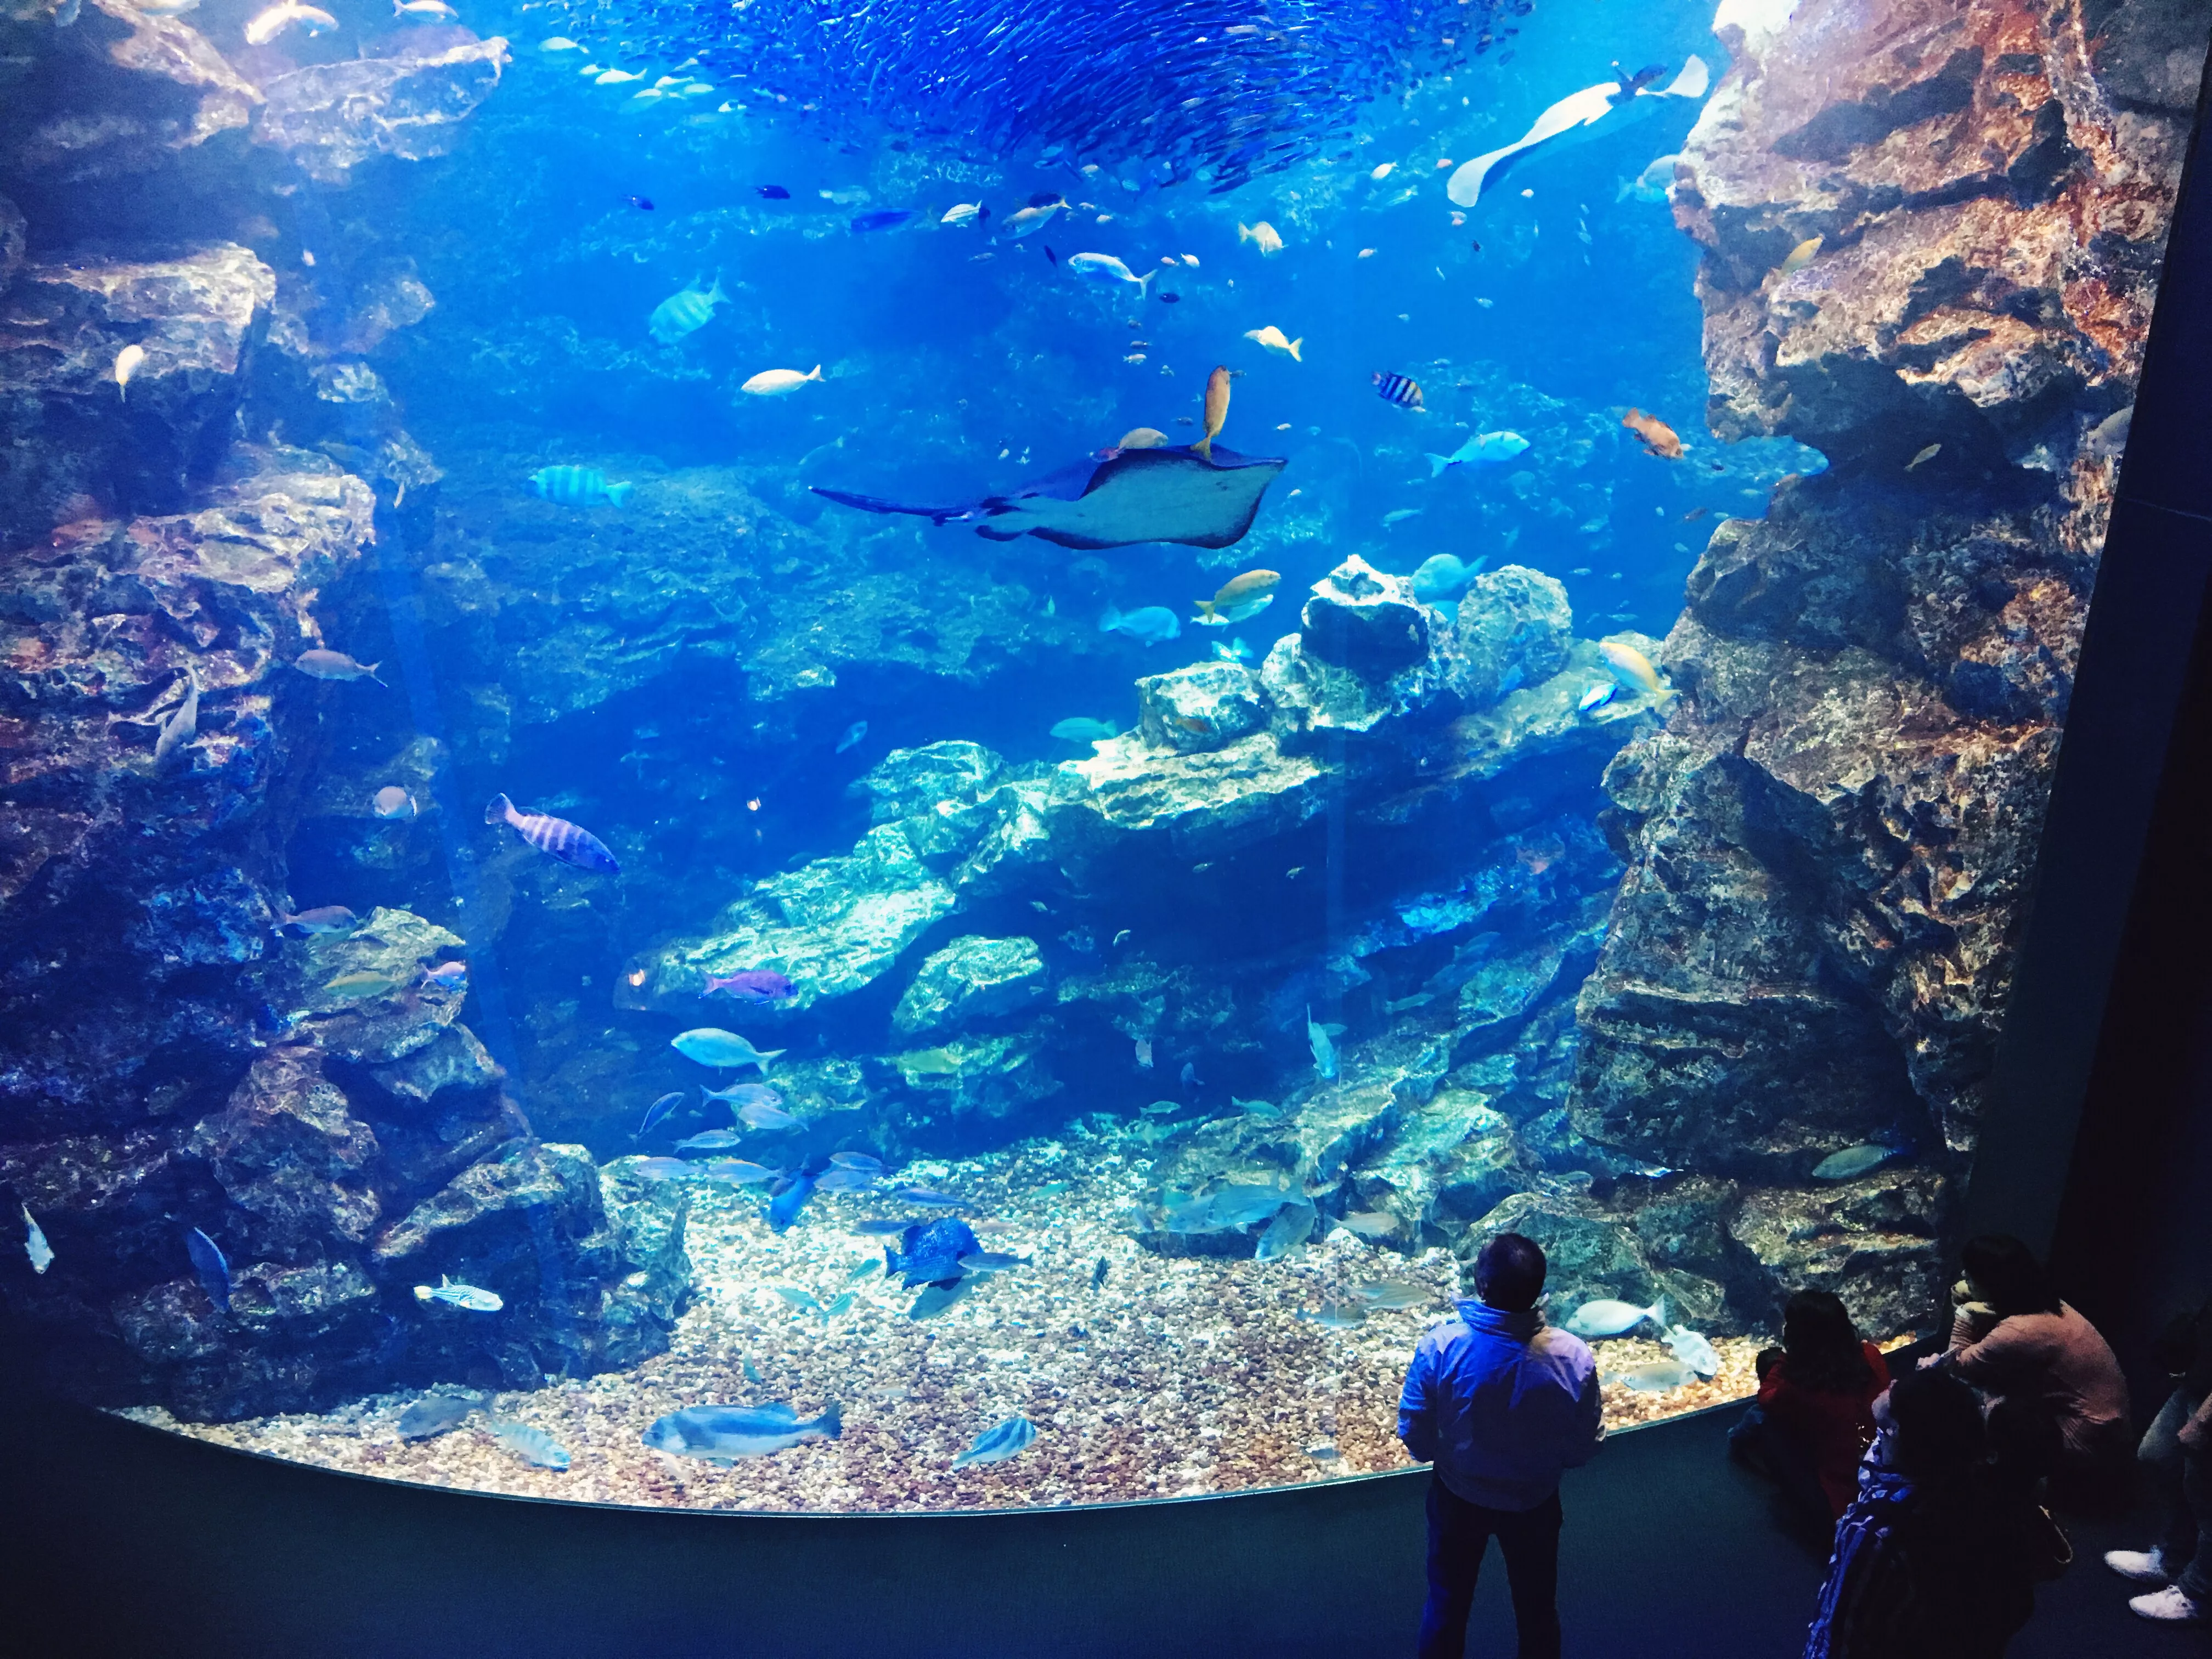 Kyoto Aquarium in Japan, East Asia | Aquariums & Oceanariums - Rated 4.2